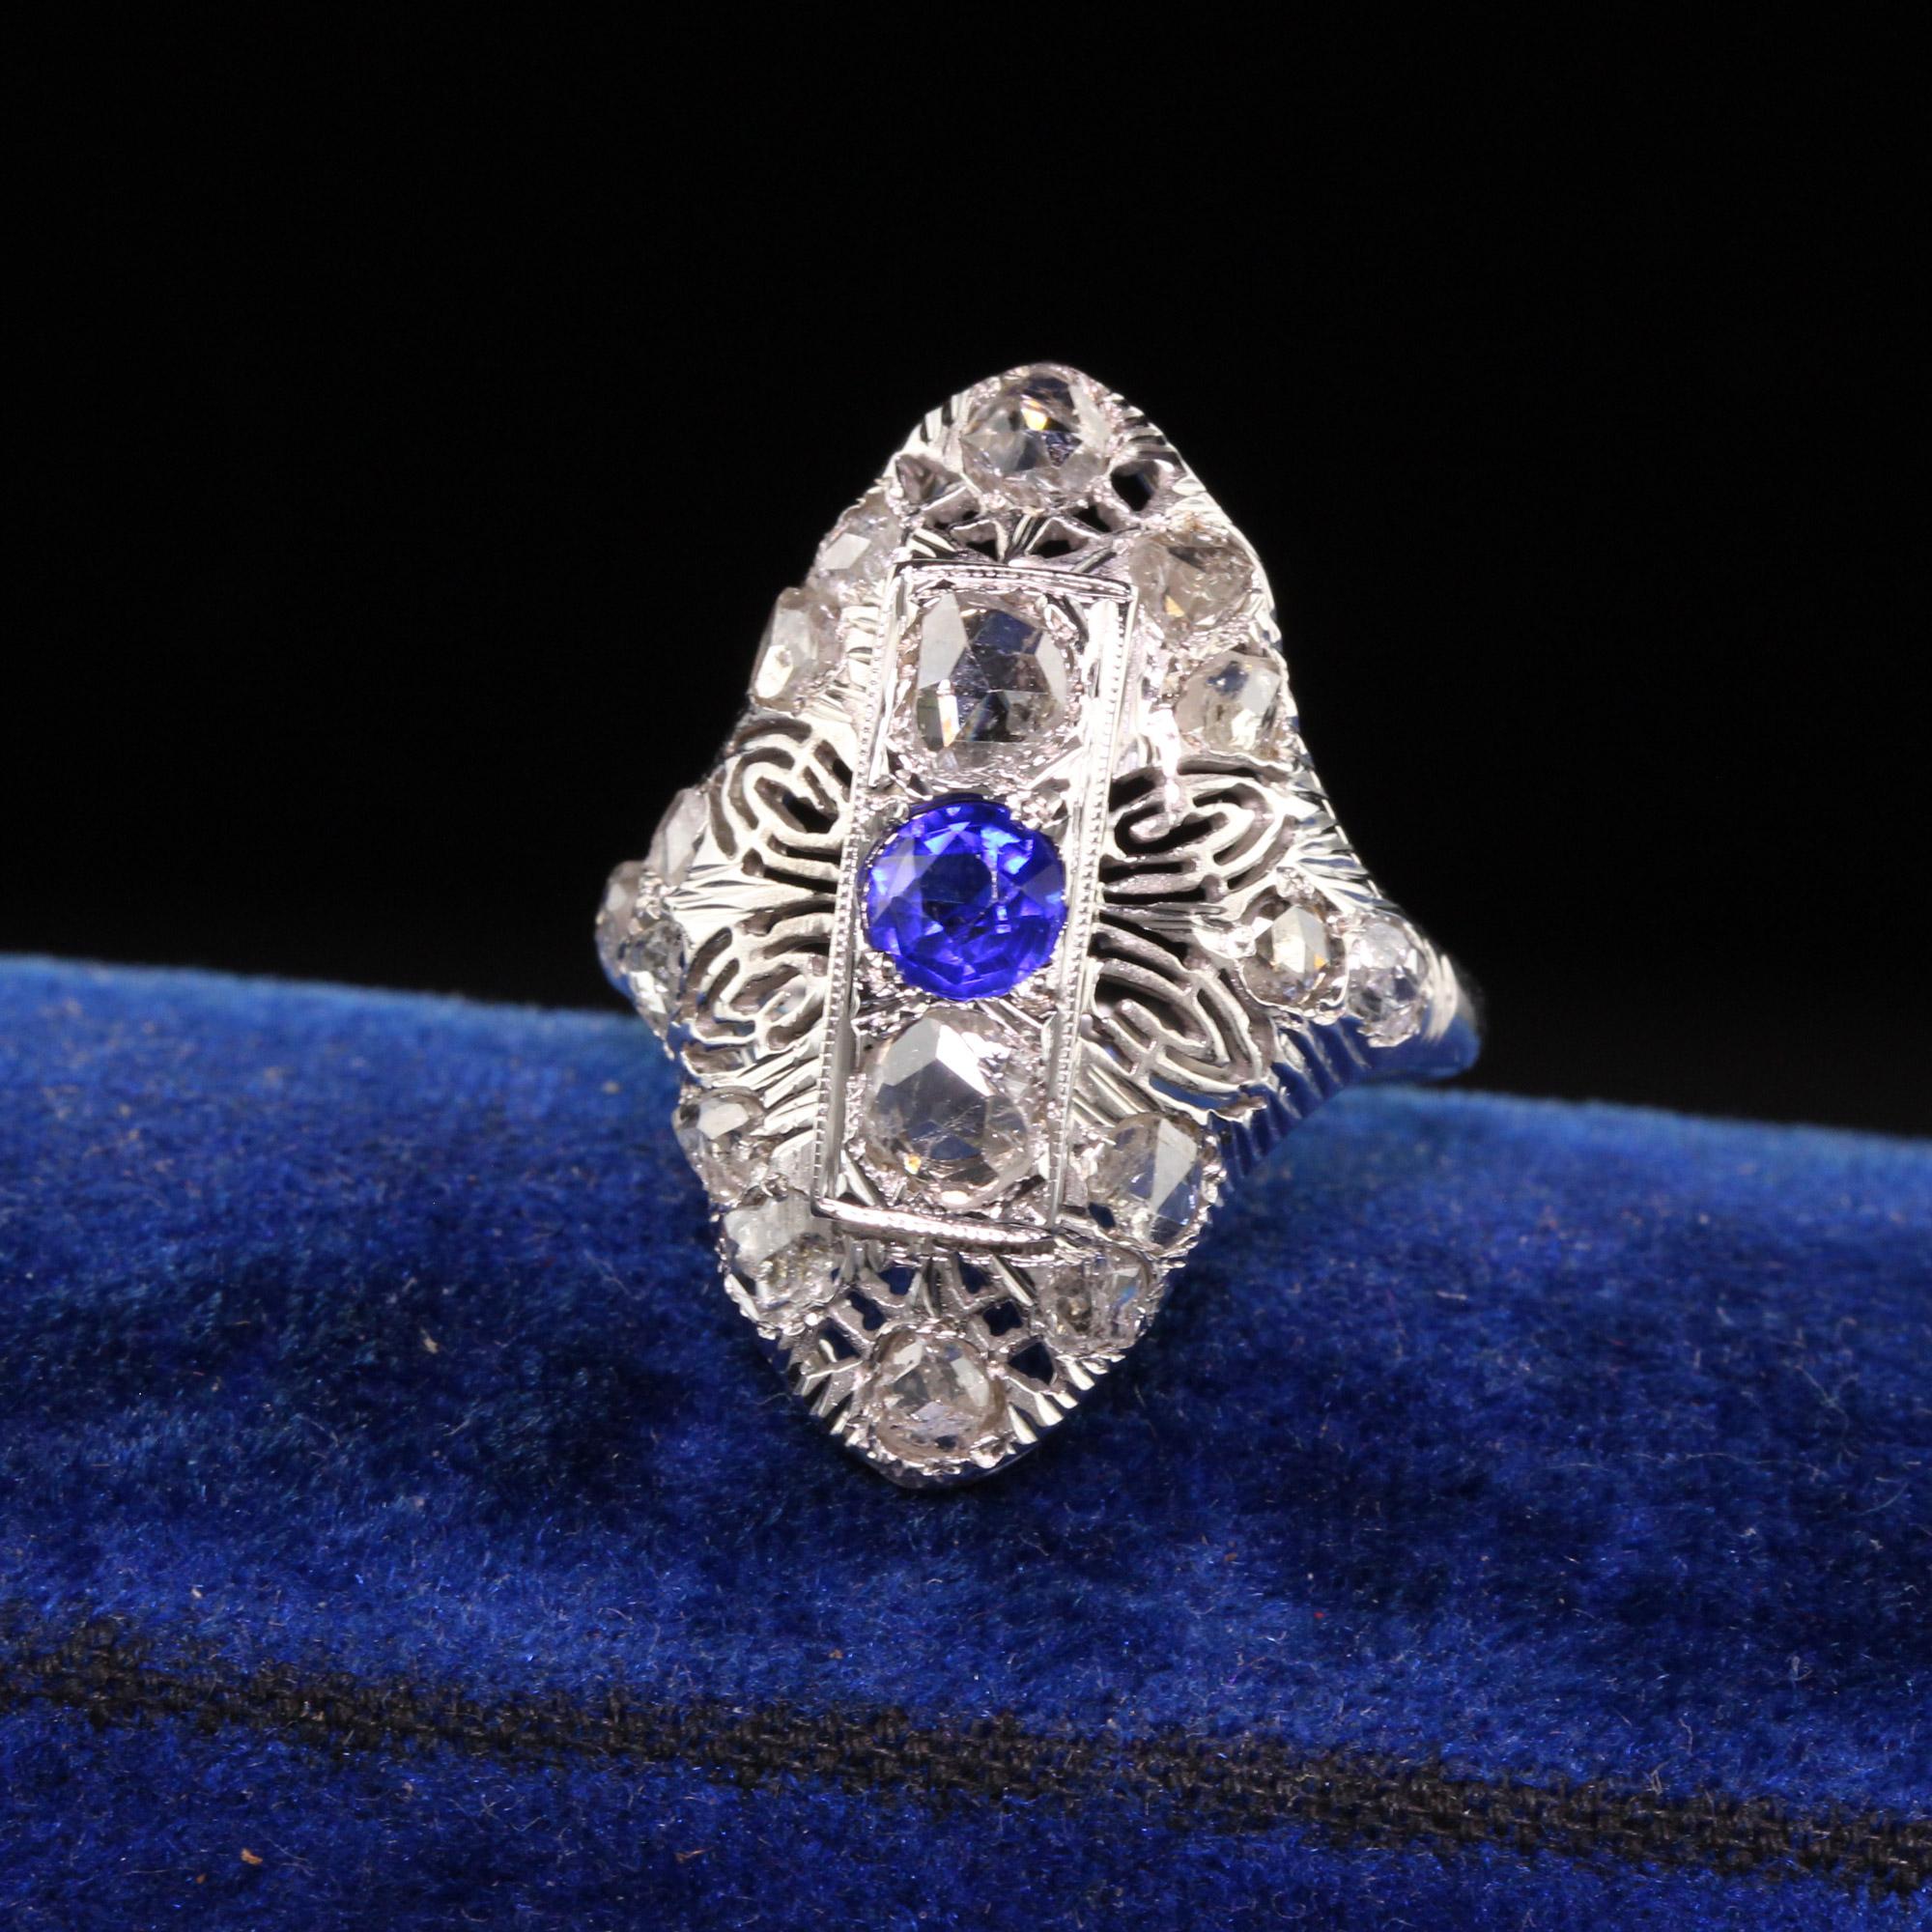 Schöne antike Art Deco 14K Weißgold Rose Cut Diamond Filigree Schild Ring. Dieser schöne Ring ist aus 14 Karat Weißgold gefertigt. Es gibt schöne Diamanten im Rosenschliff, die in einer Art-Deco-Fassung mit einem synthetischen Saphir in der Mitte